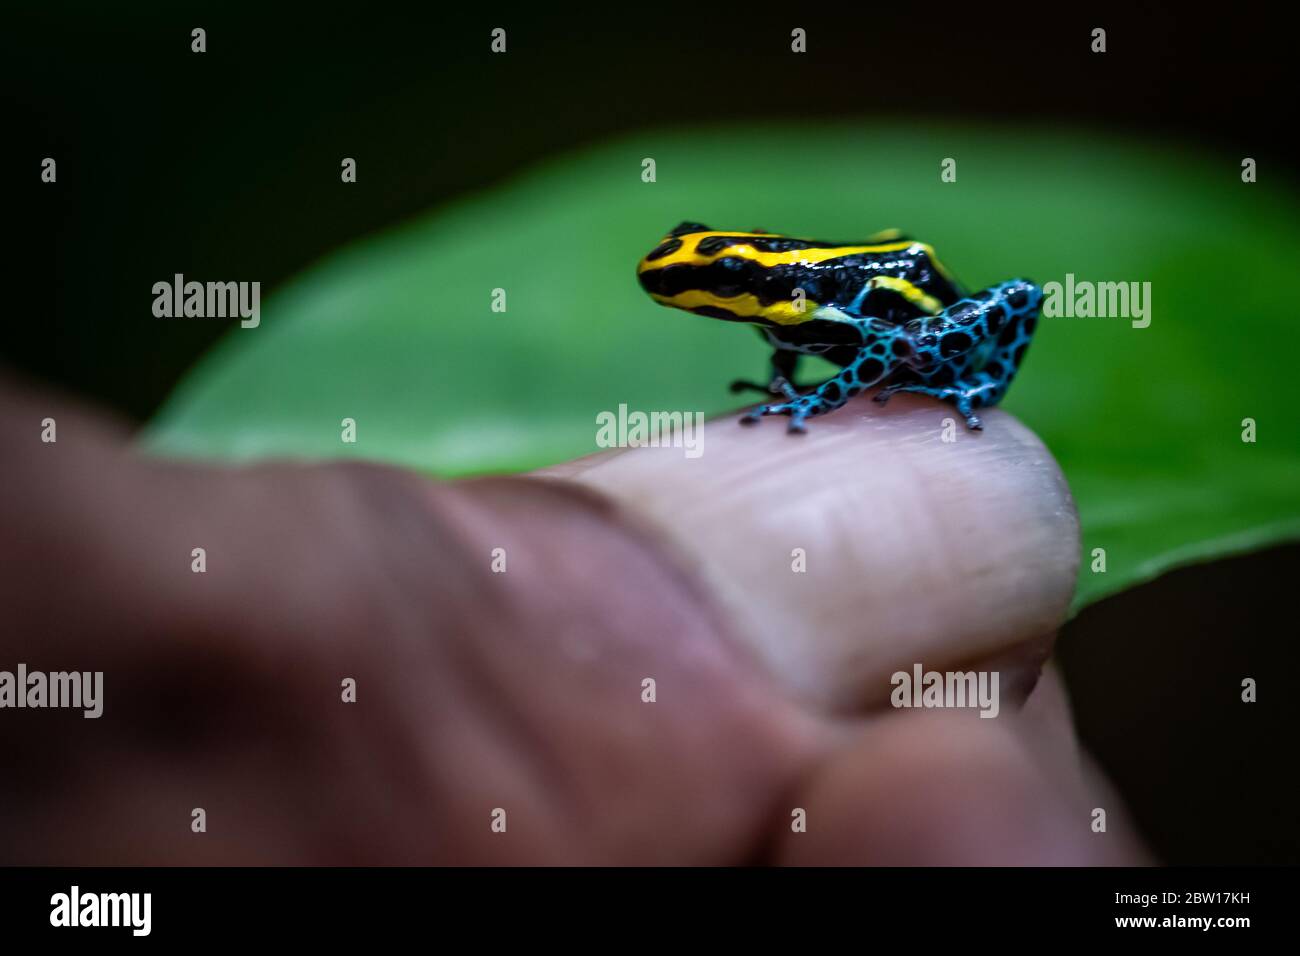 Poison Dart frog (Ranitomeya amazonica) in the Peruvian Amazon Stock Photo